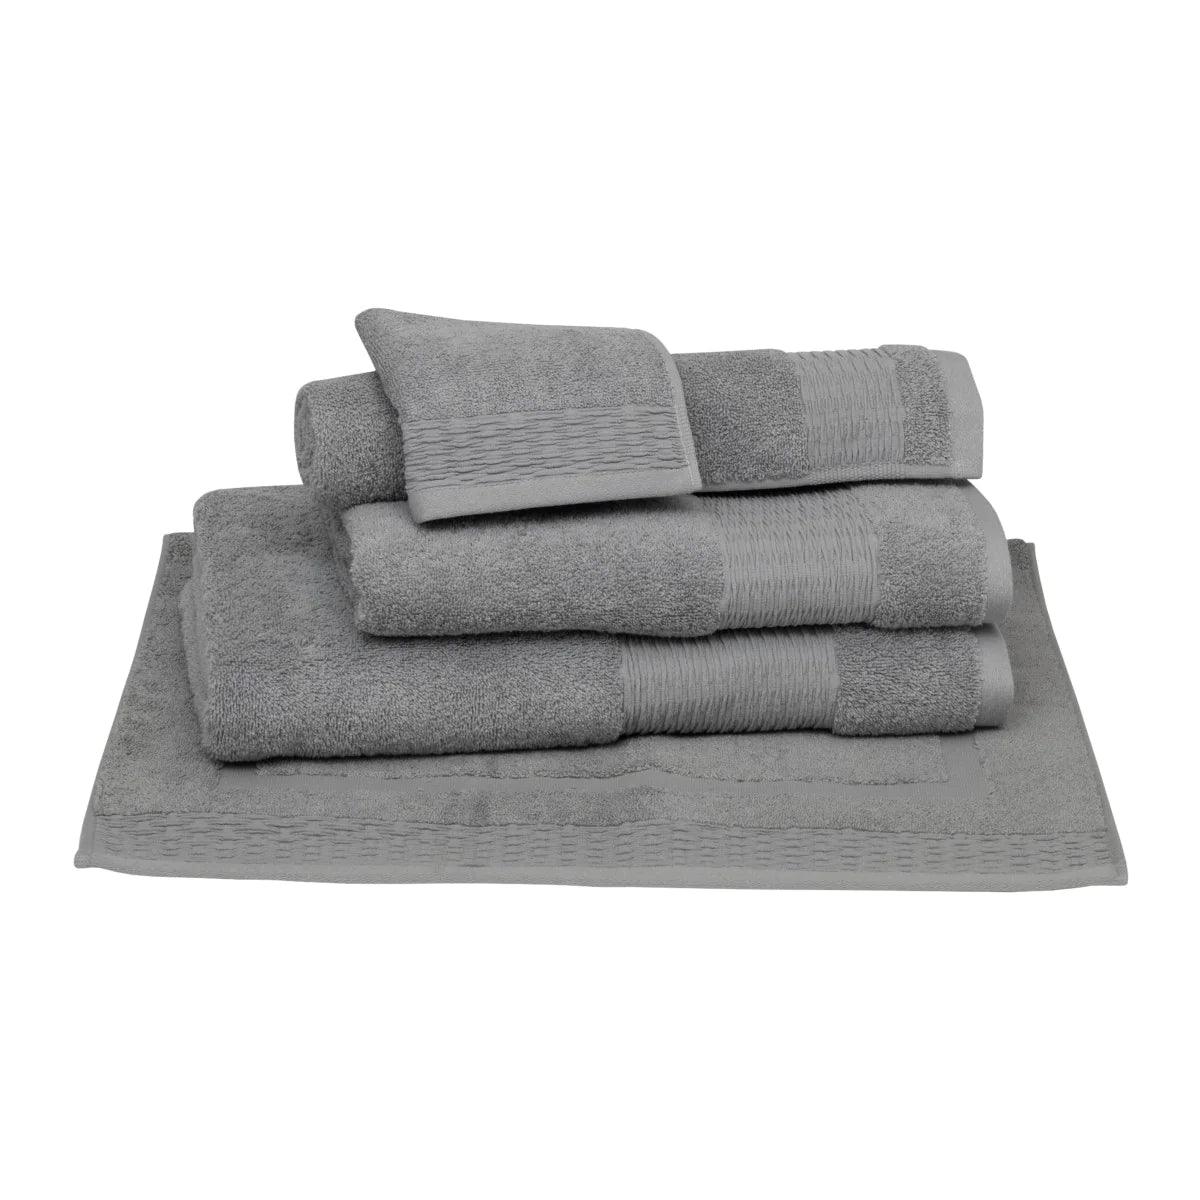 Luna Towels - Elegant Linen